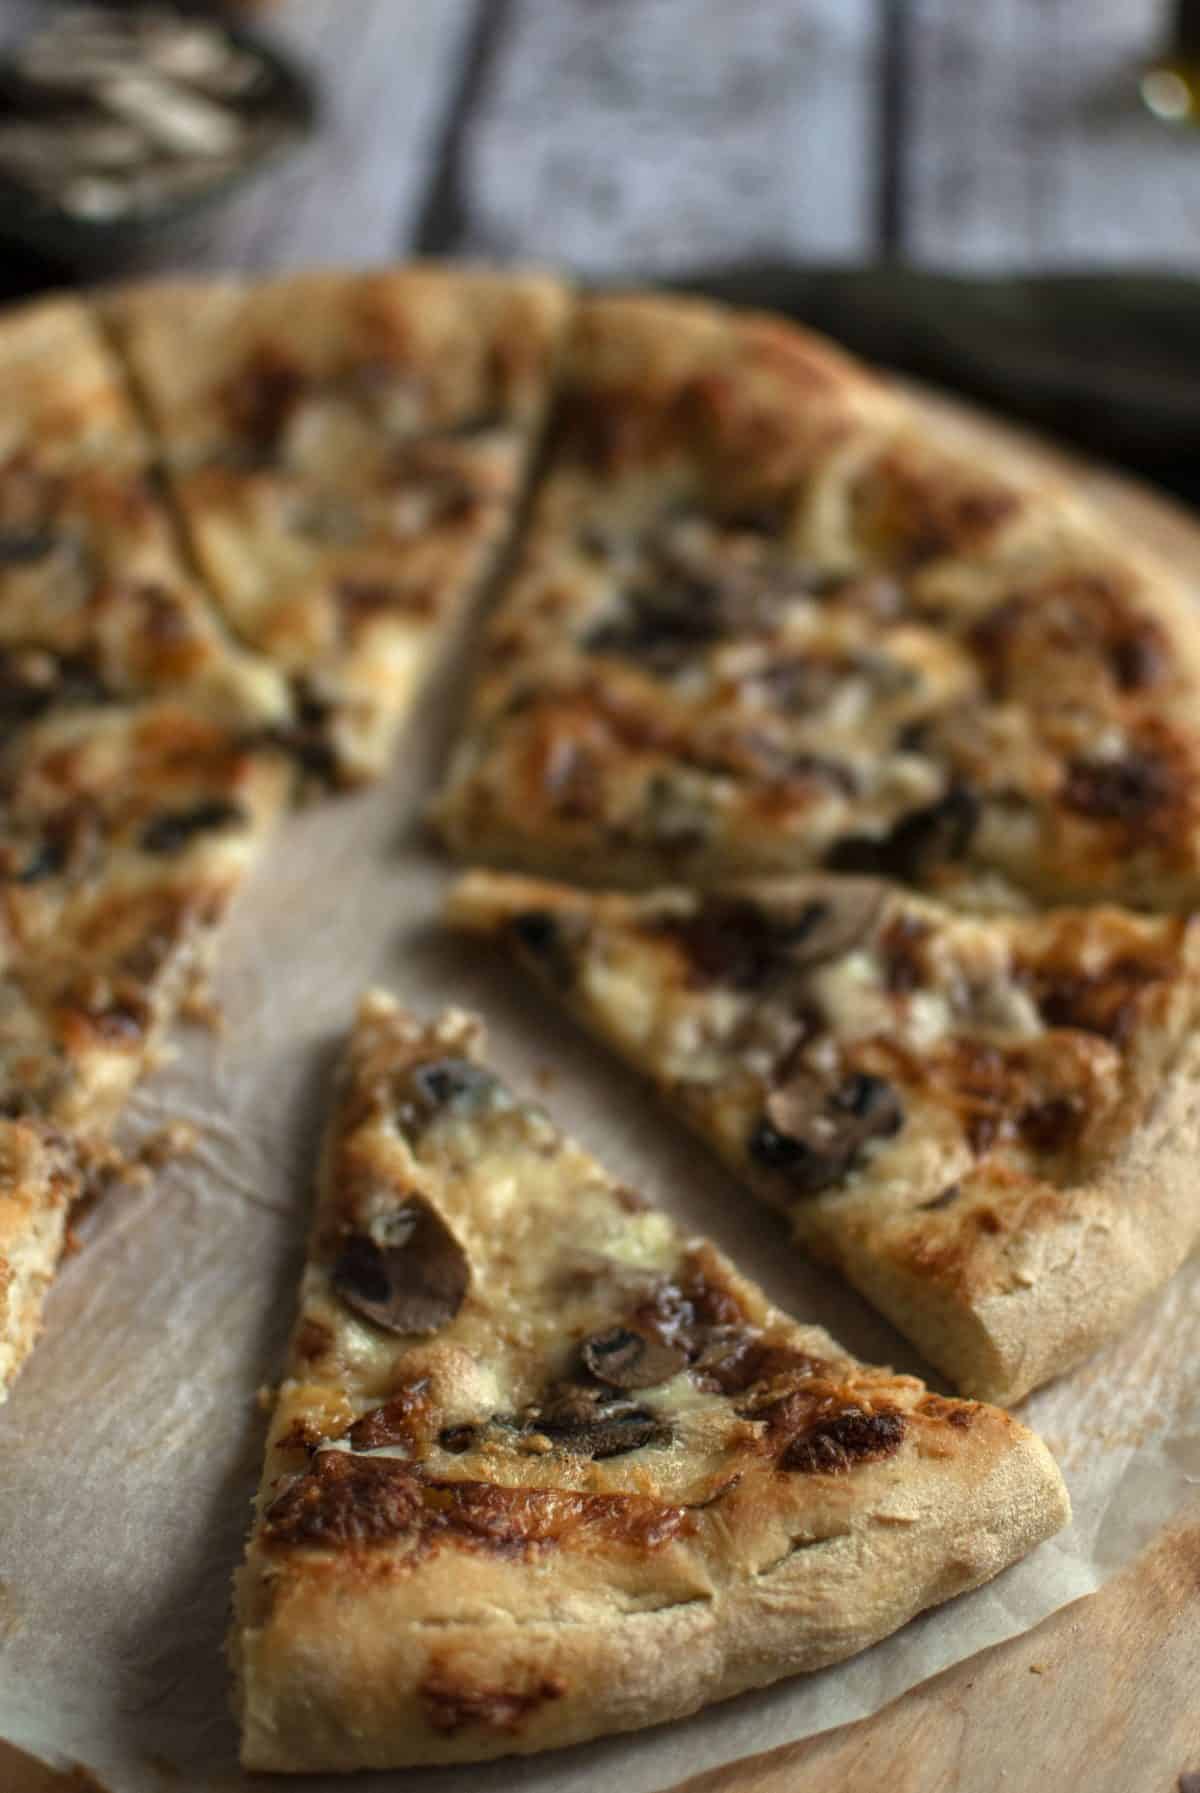 λευκή πίτσα, κατσικίσιο τυρί, λάδι τρούφας, pizza bianca